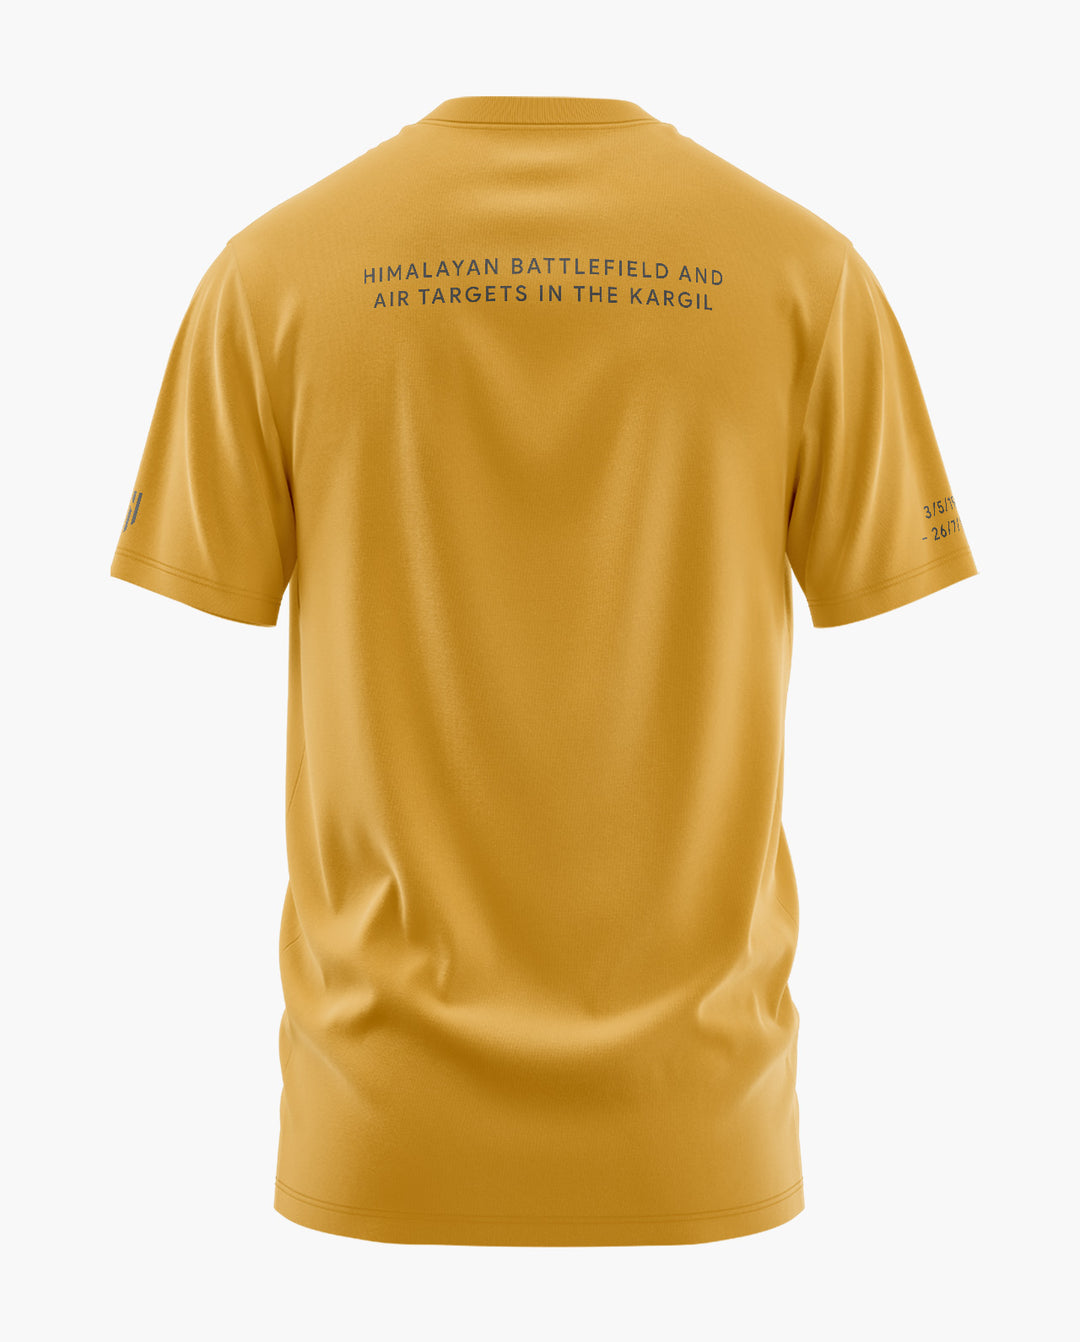 KARGIL TERRAIN T-Shirt